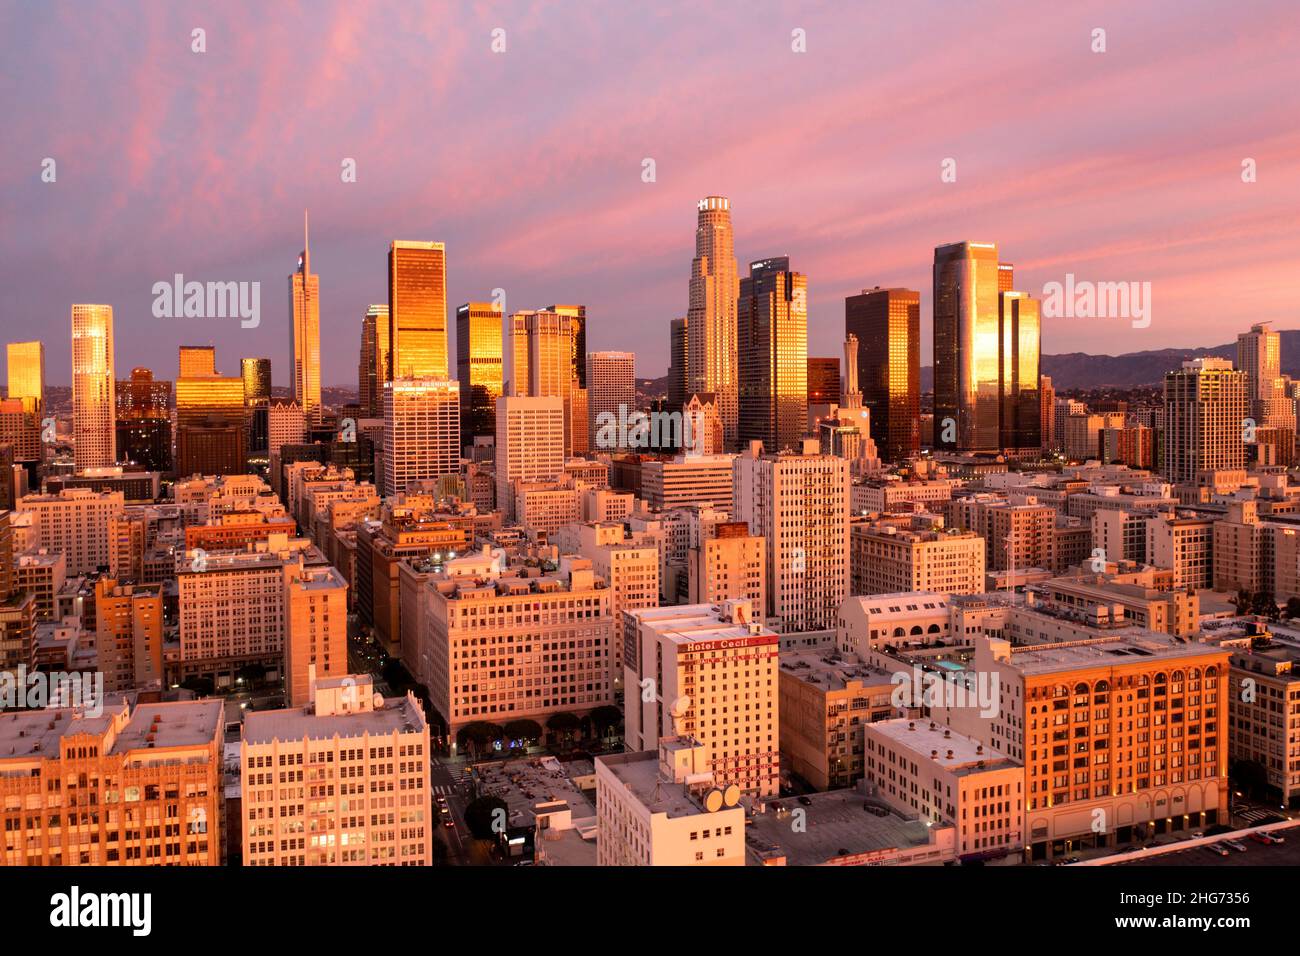 Vue aérienne d'un lever de soleil étonnant reflétant le rose et l'or dans les bâtiments du centre-ville de Los Angeles Banque D'Images